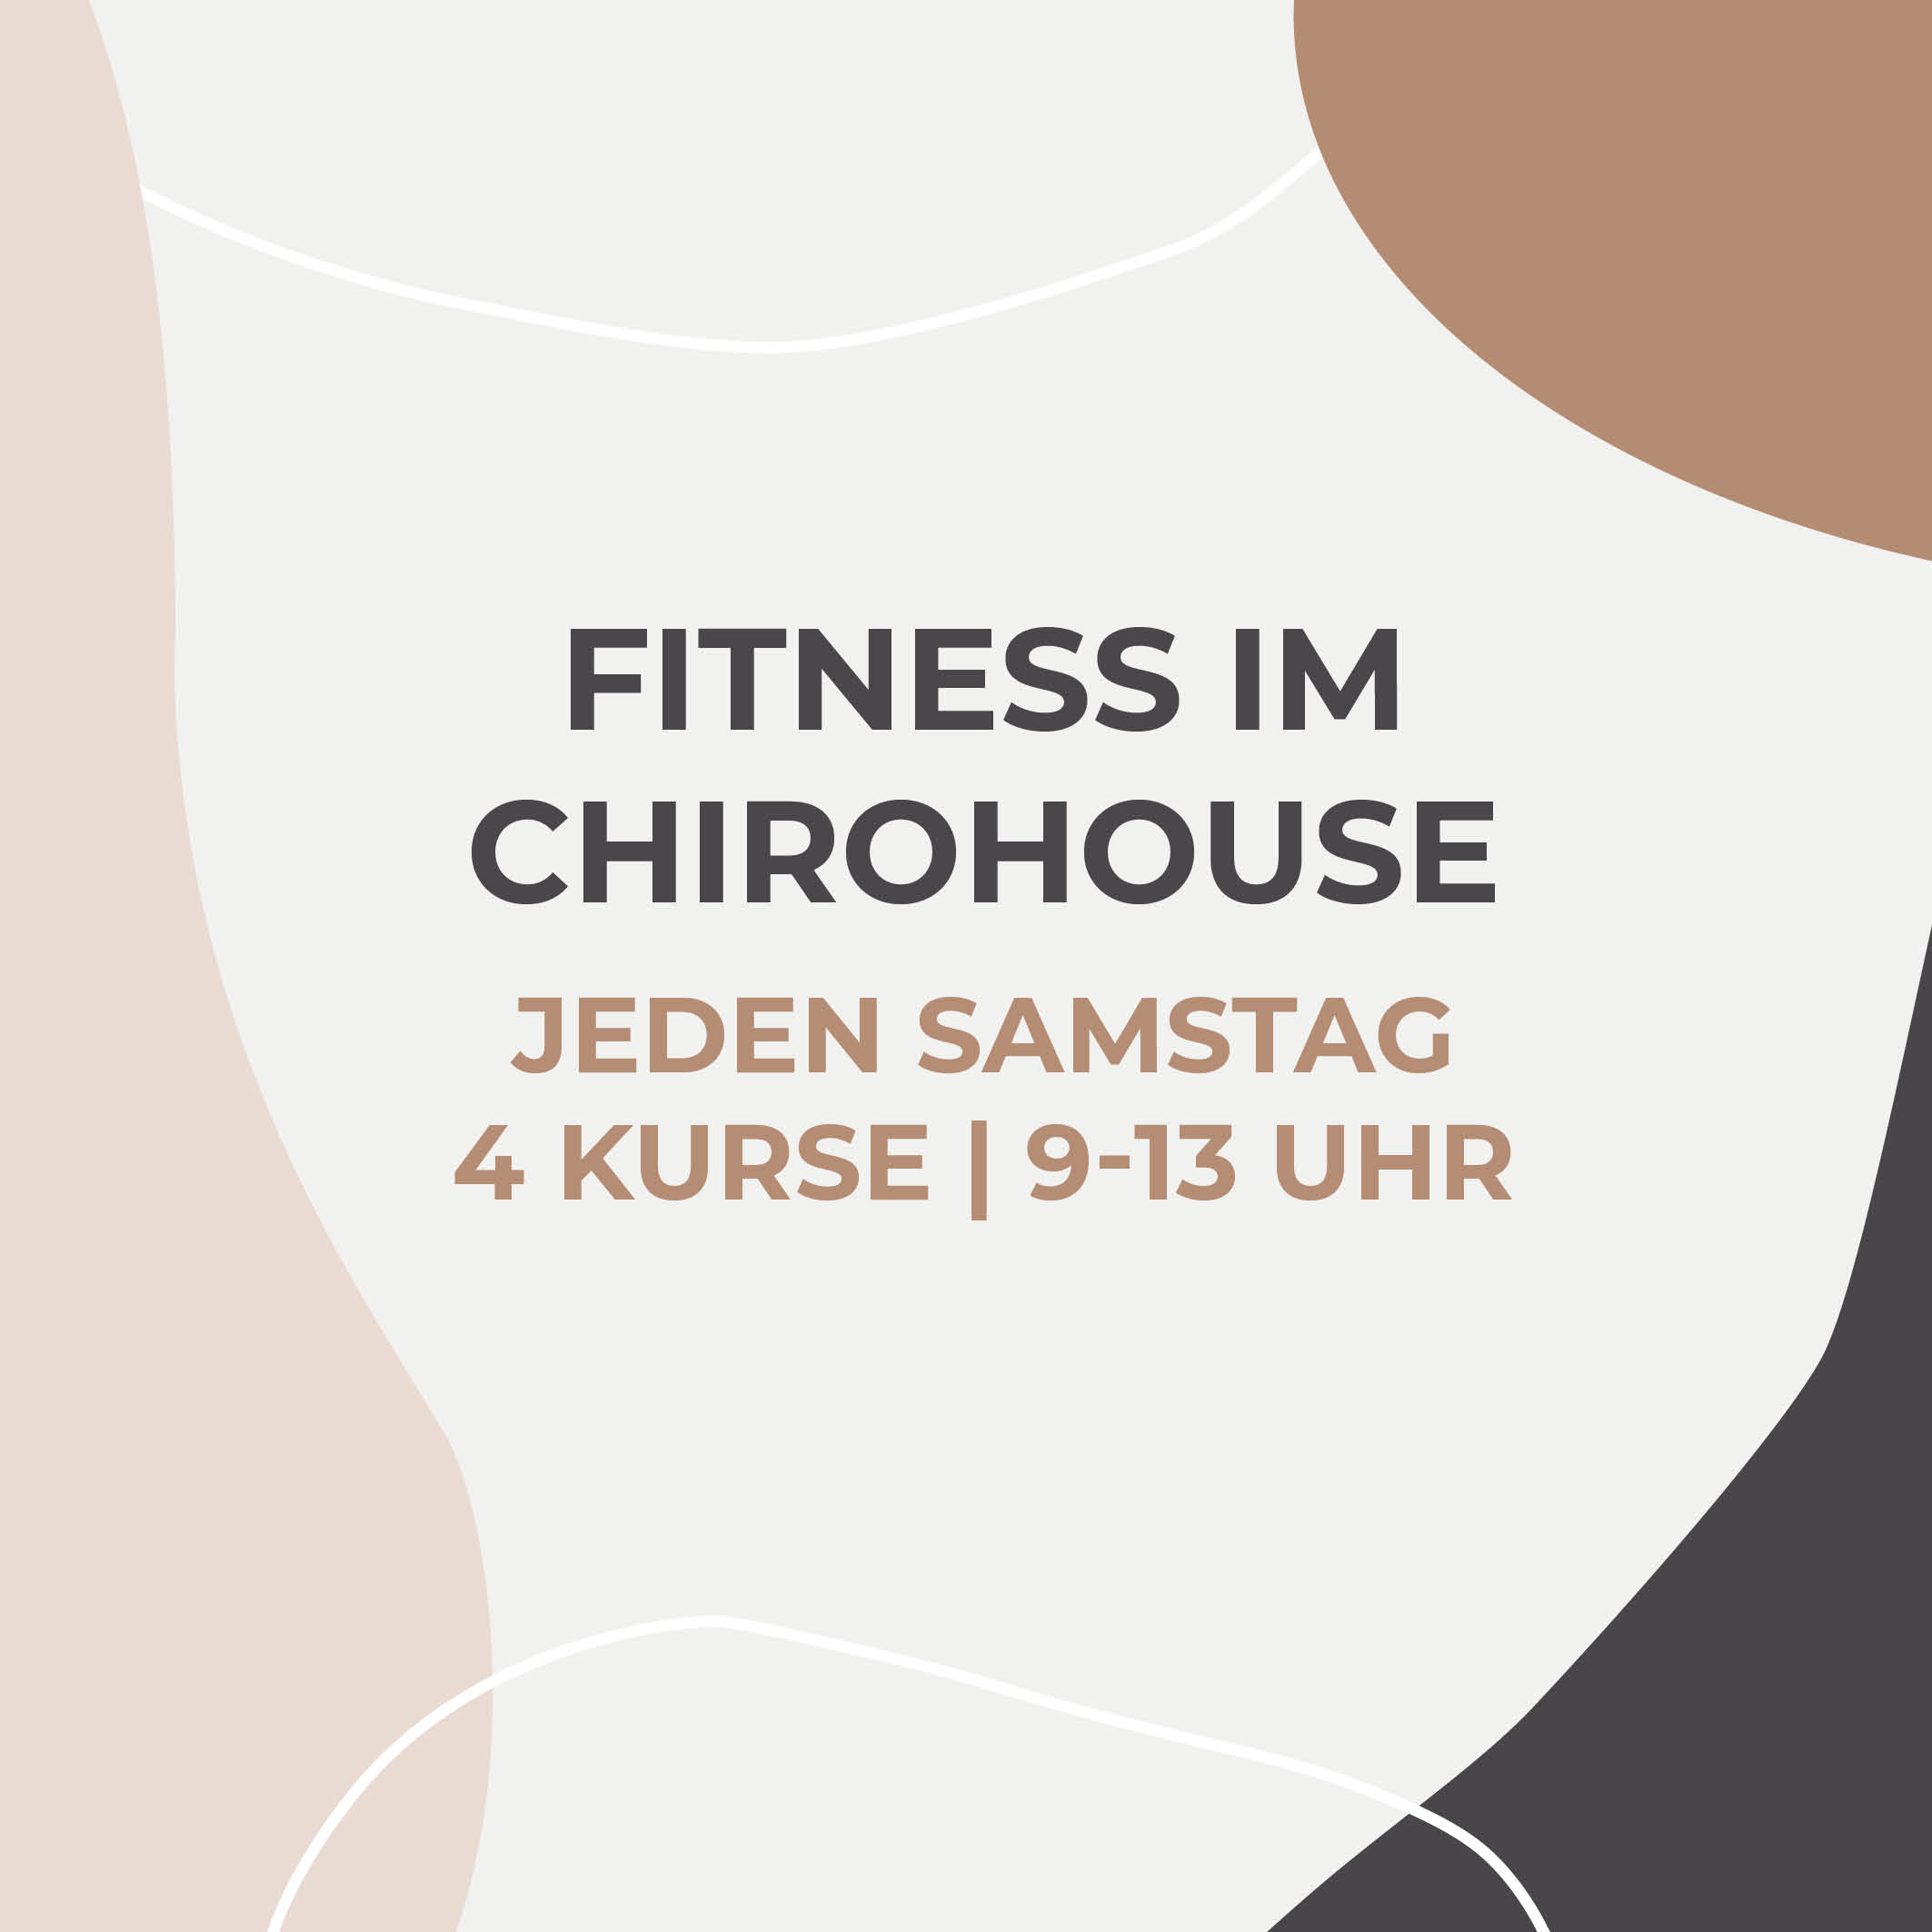 Chirohouse Chiropraktik Berlin www.chirohouse.de - Chiropratique, chiropraticiens, chirothérapeutes, thérapie innovante, prévention, entraînement - Fitness au ChiroHouse tous les samedis - inscrivez-vous maintenant !